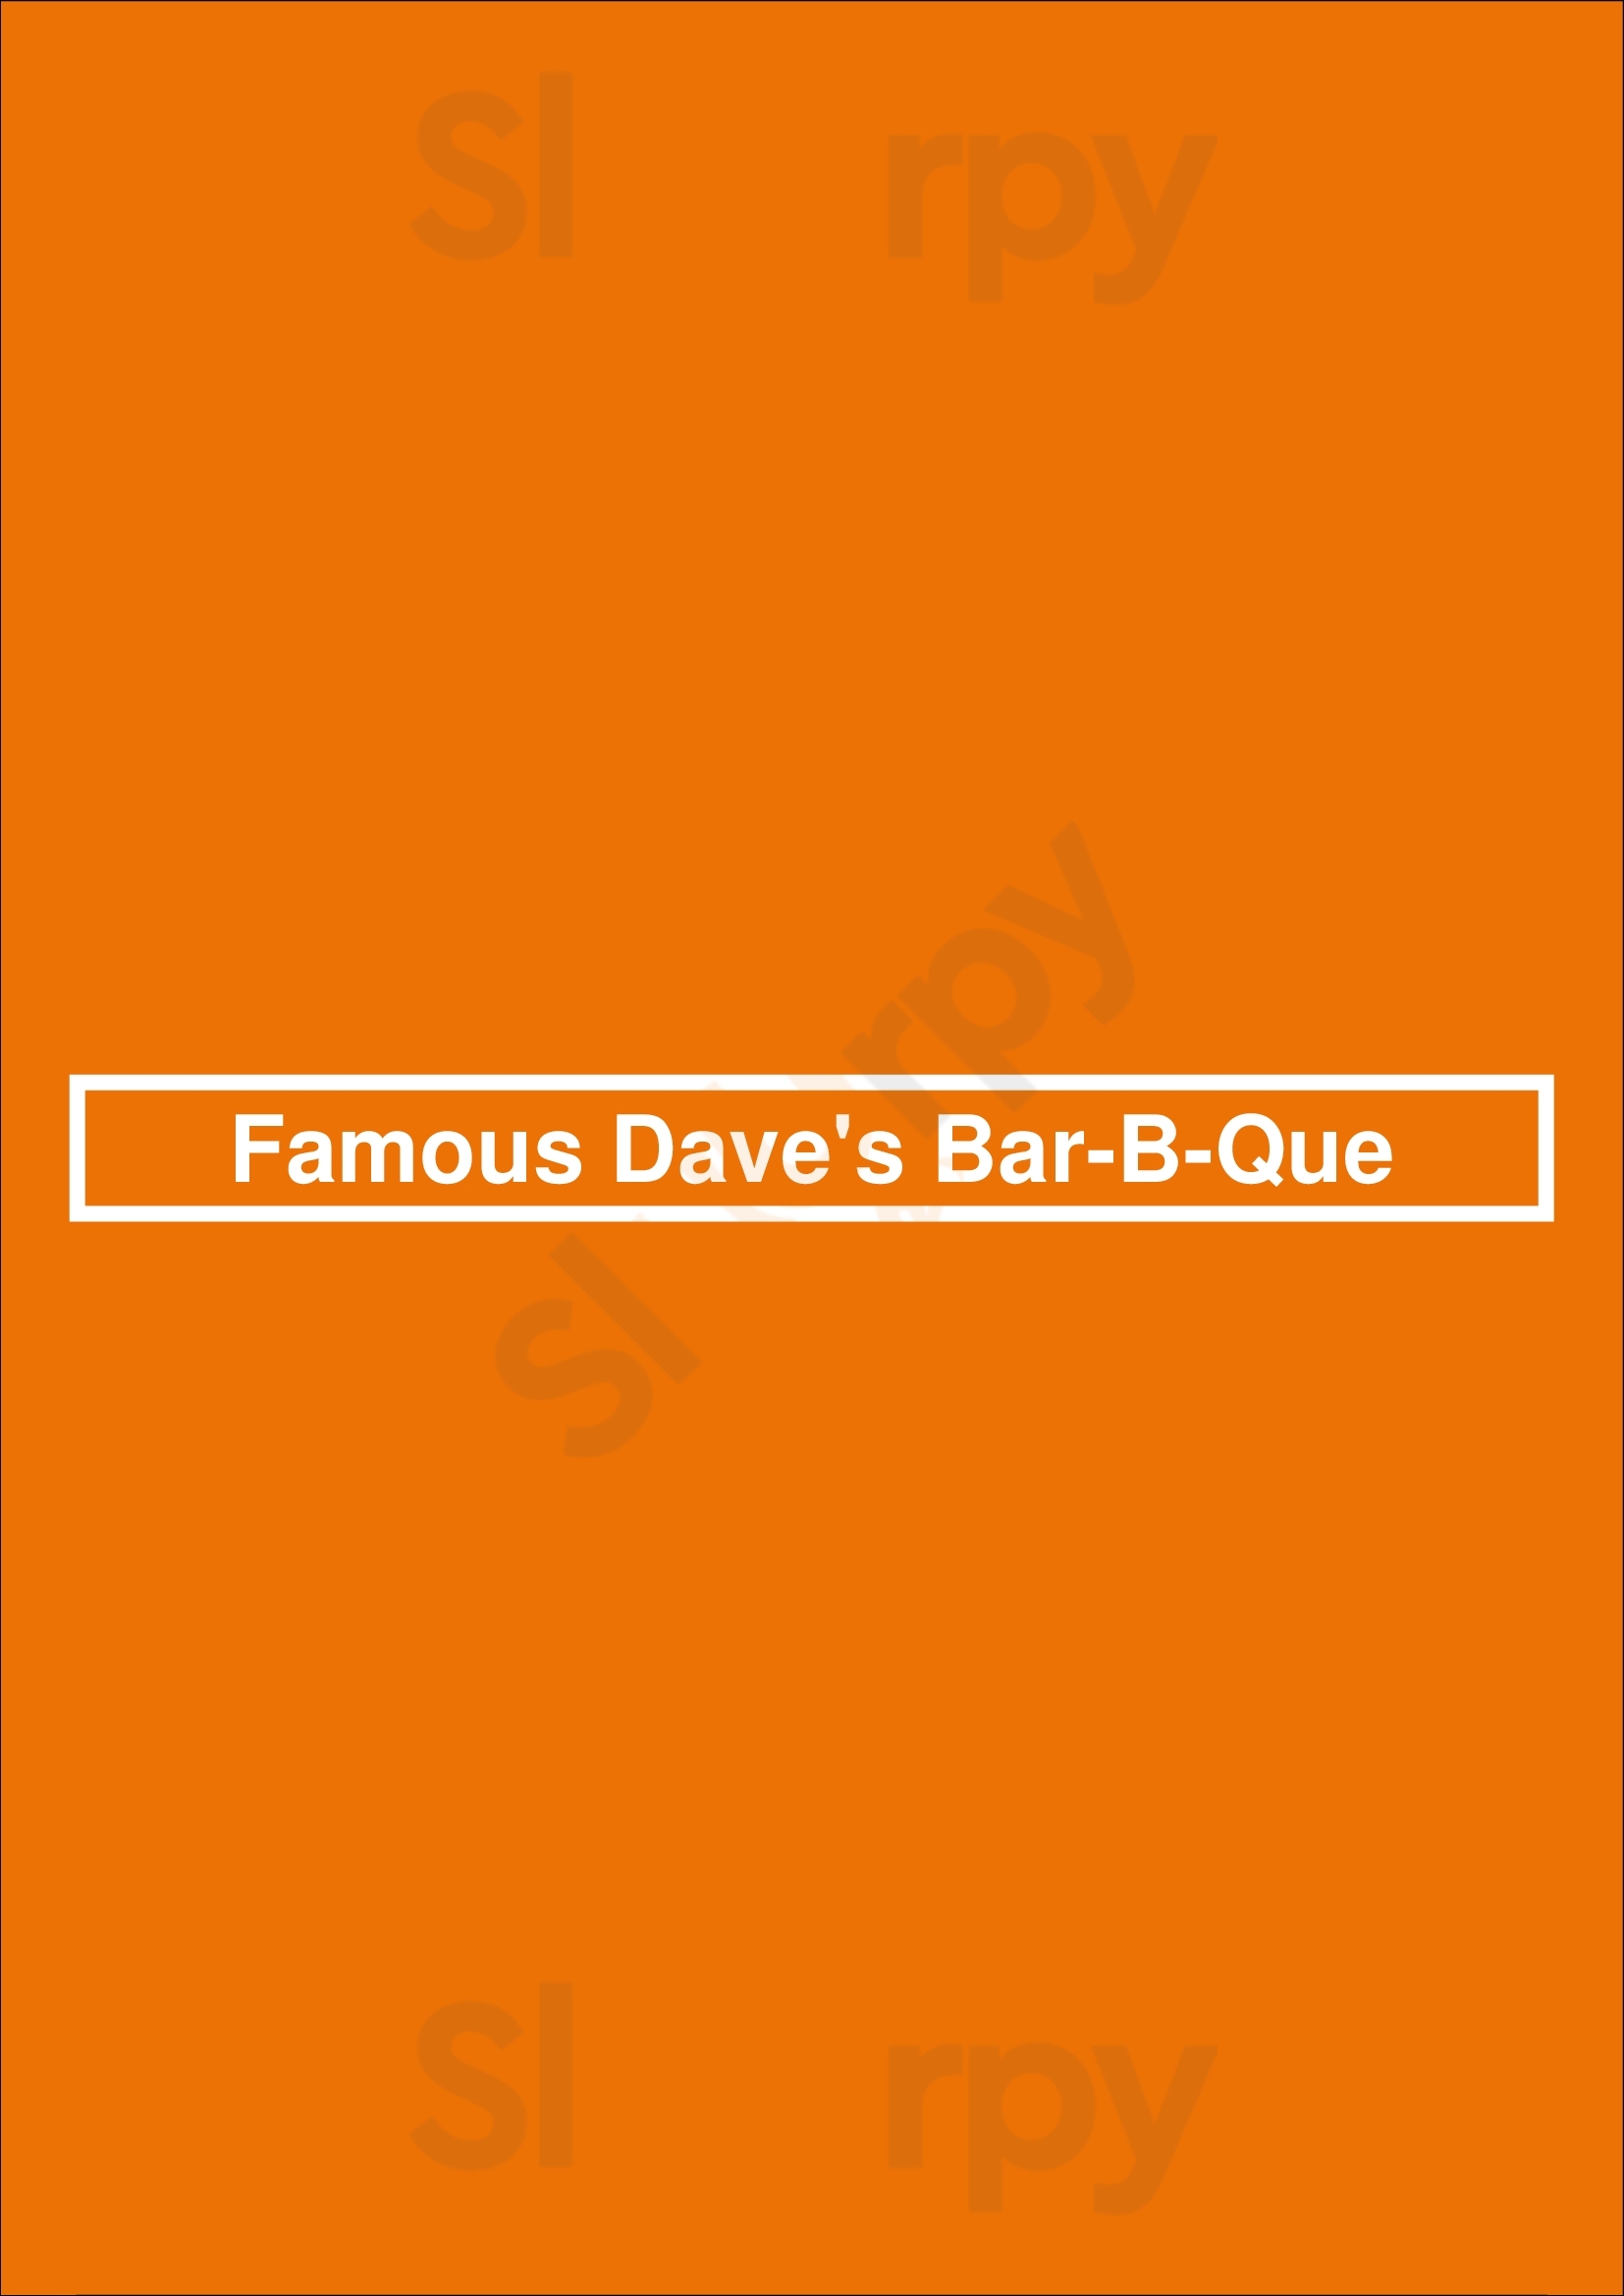 Famous Dave's Bar-b-que Reno Menu - 1